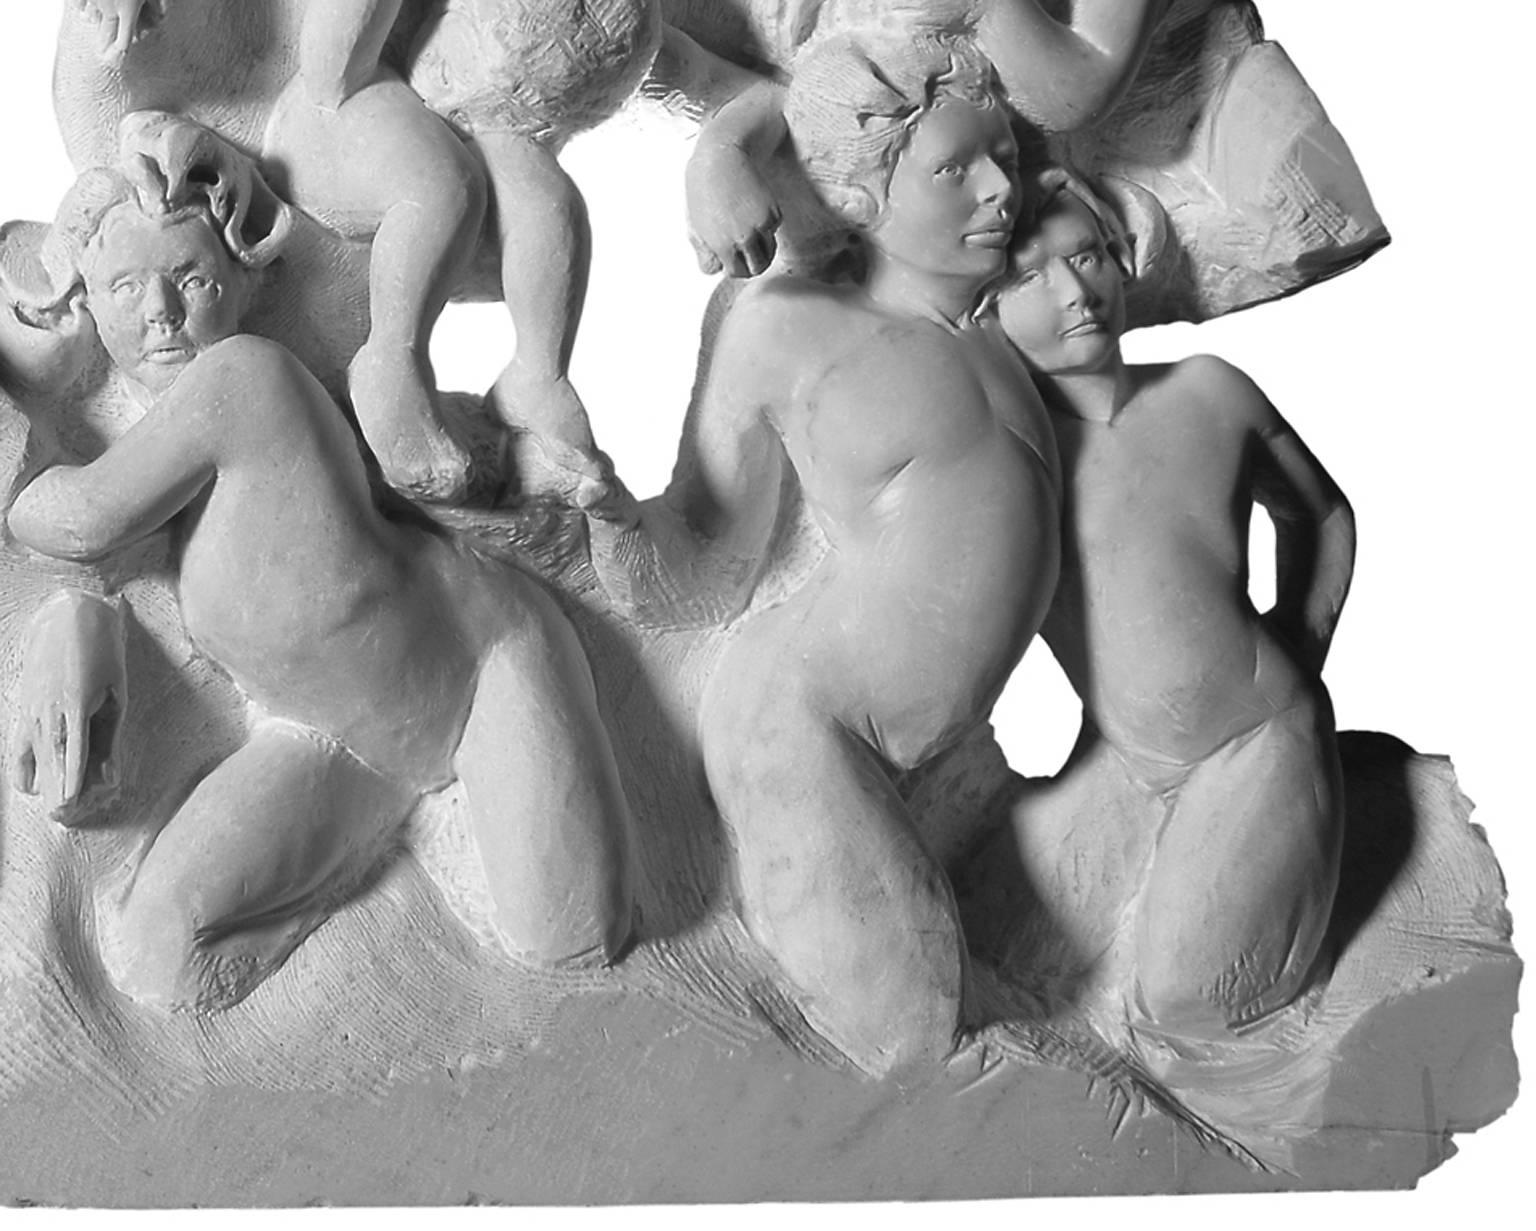 DANZA (Tanz) von Lorenzo Vignoli
Auffälliges handgeschnitztes Friesrelief aus Carrara-Marmor des zeitgenössischen italienischen Bildhauers Lorenzo Vignoli, das faszinierende klassische Bezüge und zeitgenössische mediterrane Einflüsse